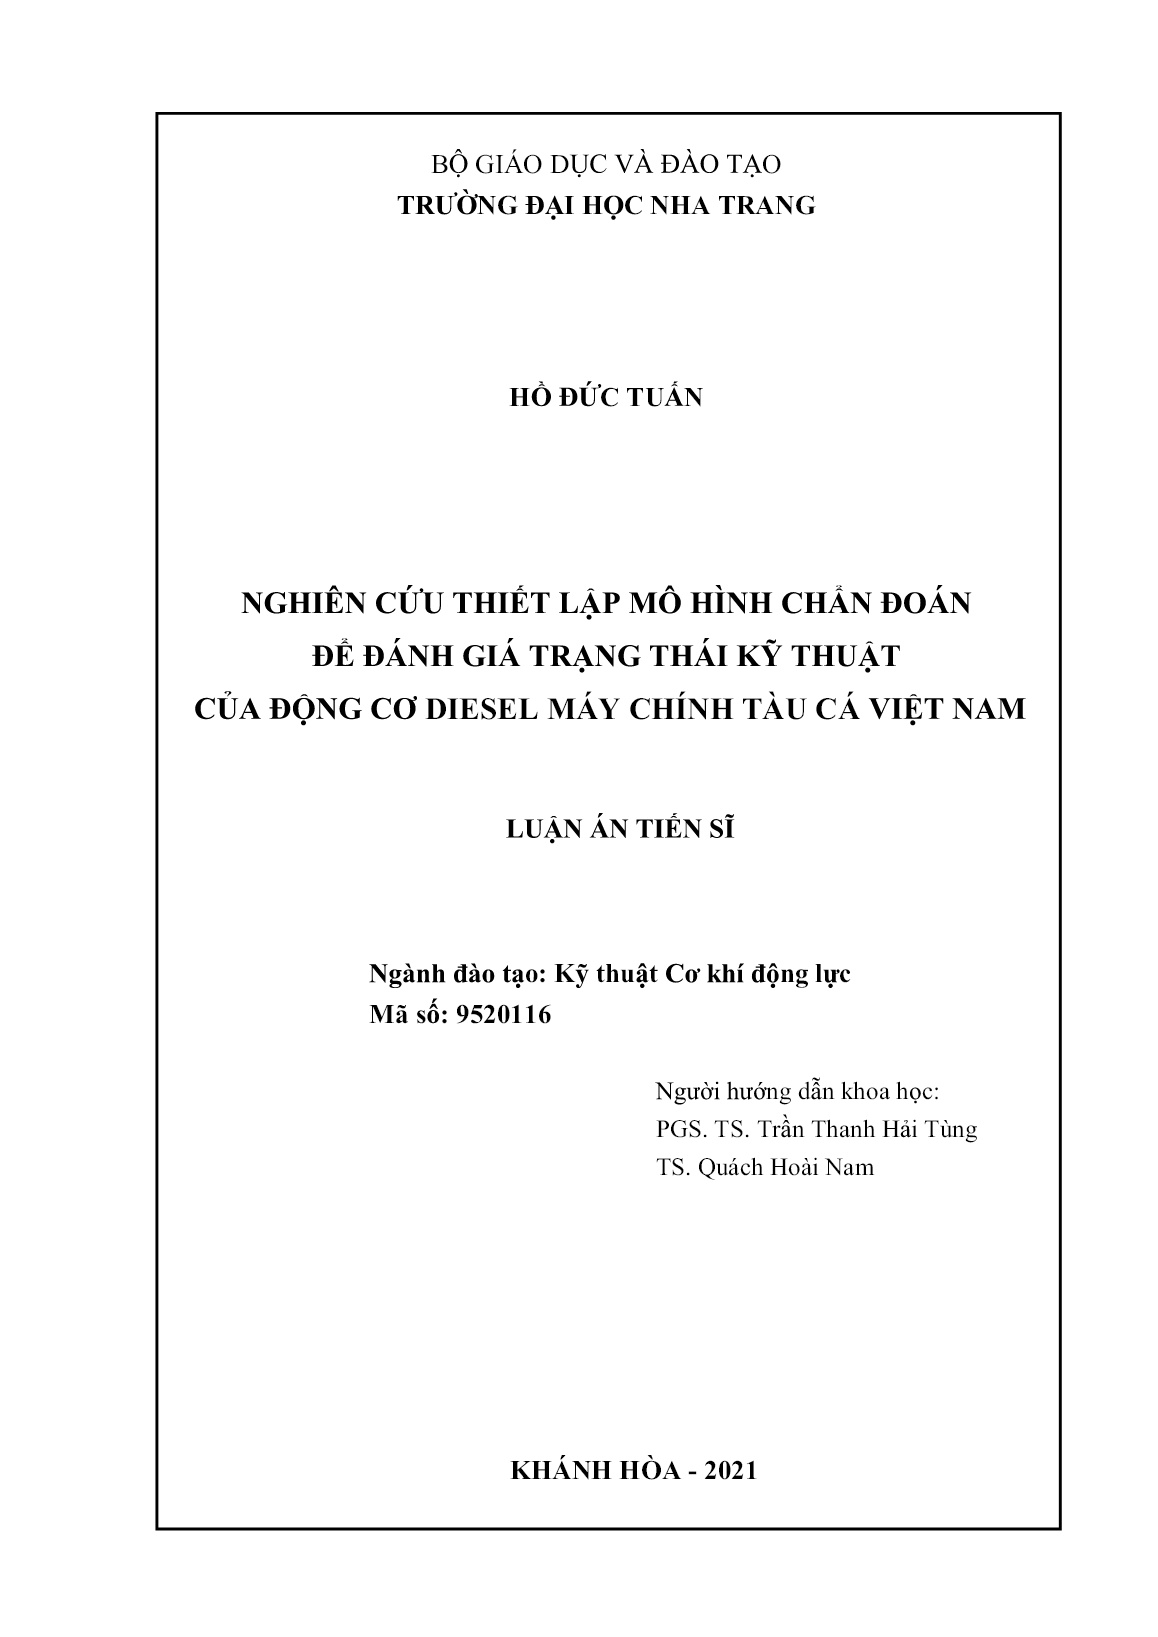 Luận án Nghiên cứu thiết lập mô hình chẩn đoán để đánh giá trạng thái kỹ thuật của động cơ diesel máy chính tàu cá Việt Nam trang 2